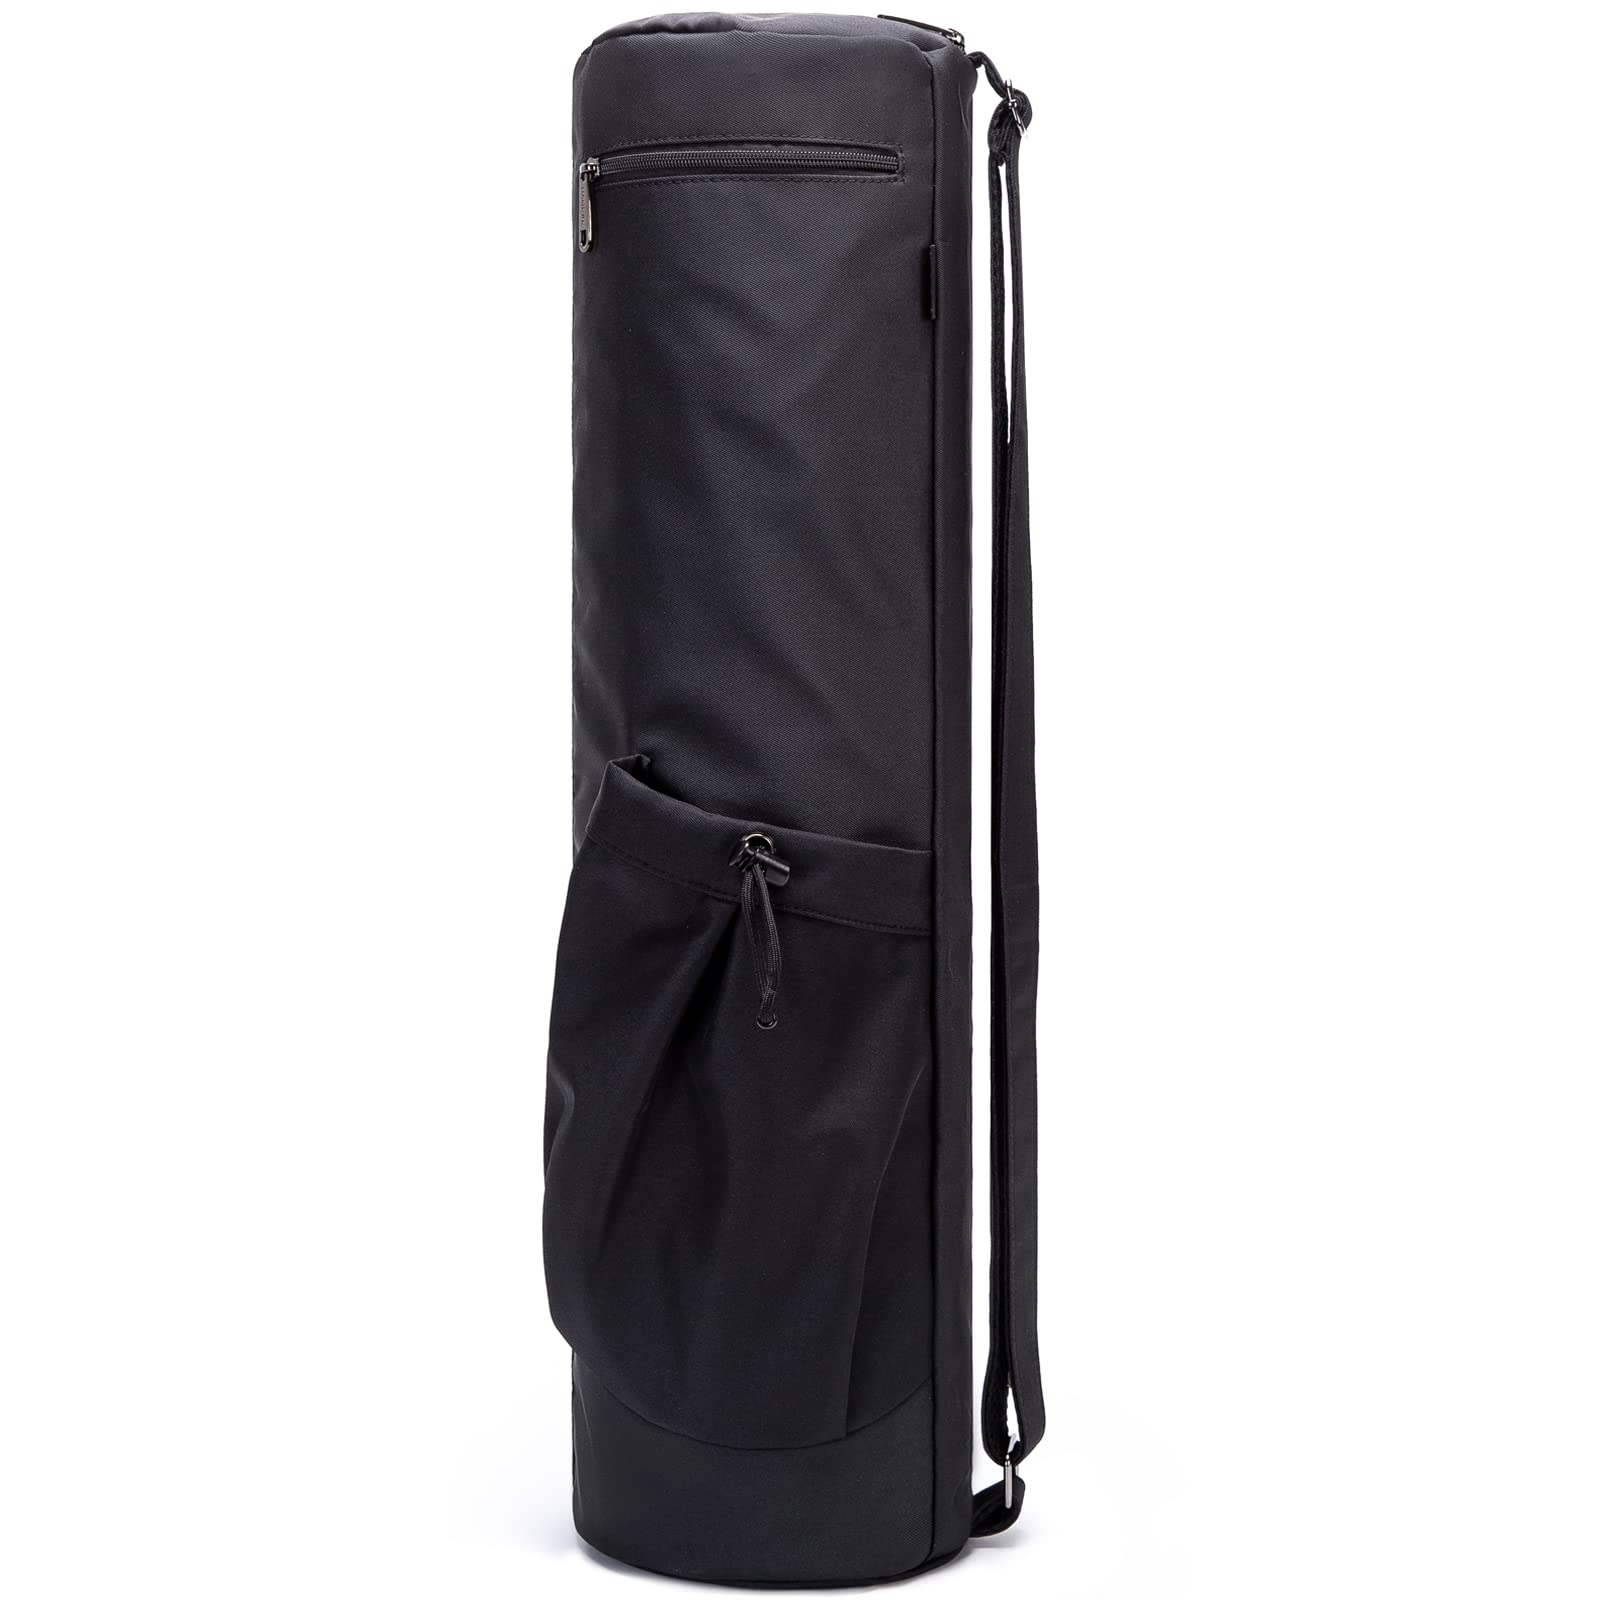 HAGUSU Yoga Mat Bag, Waterproof Yoga Bags and Carriers for Women